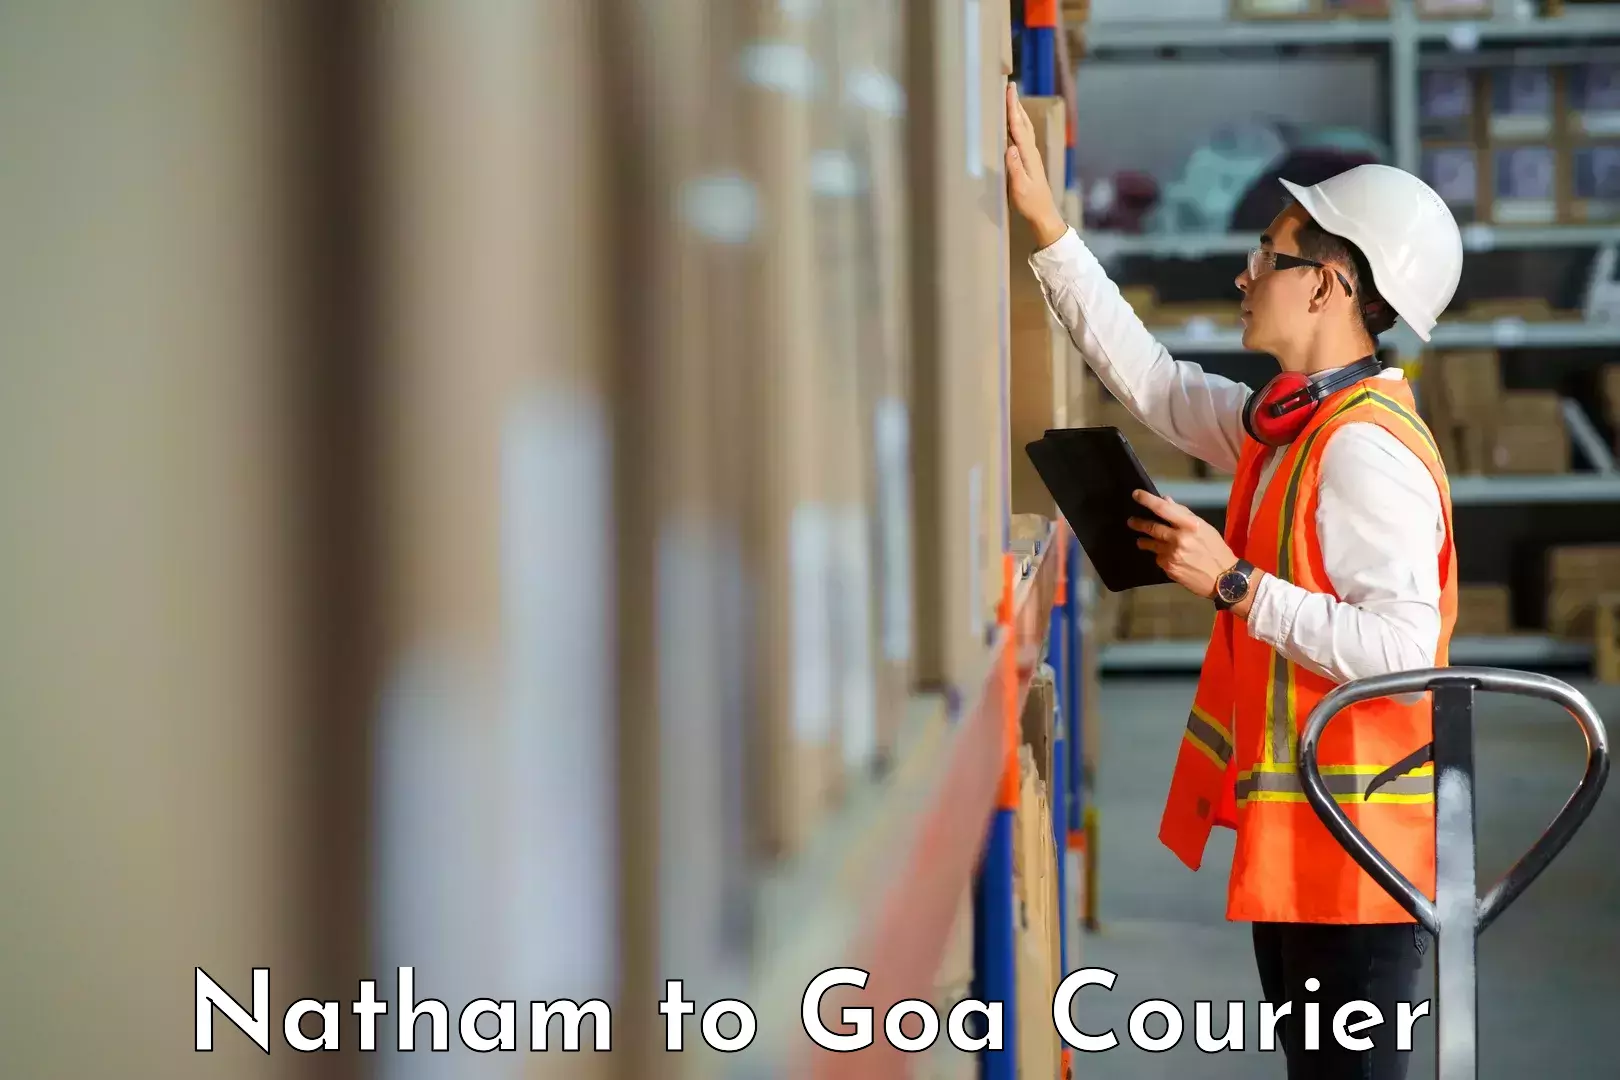 Courier app Natham to Mormugao Port